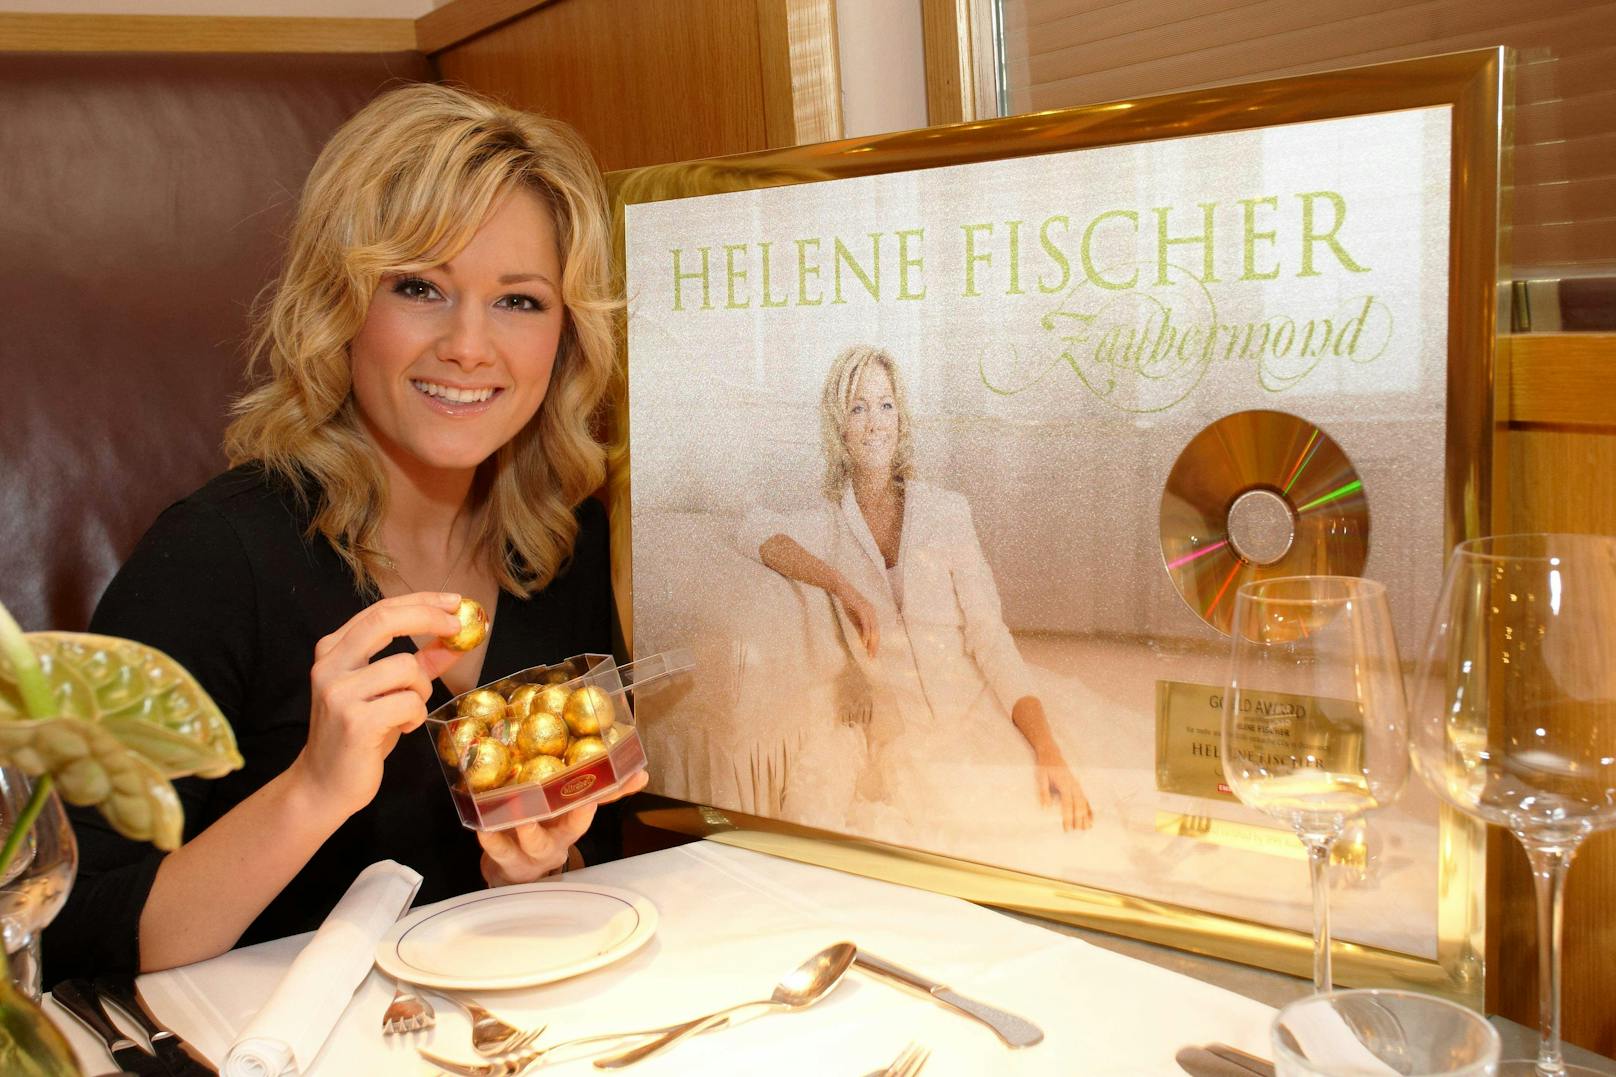 Helene Fischer feiert Gold
und Platin für ihr Album "Zaubermond" (2008)